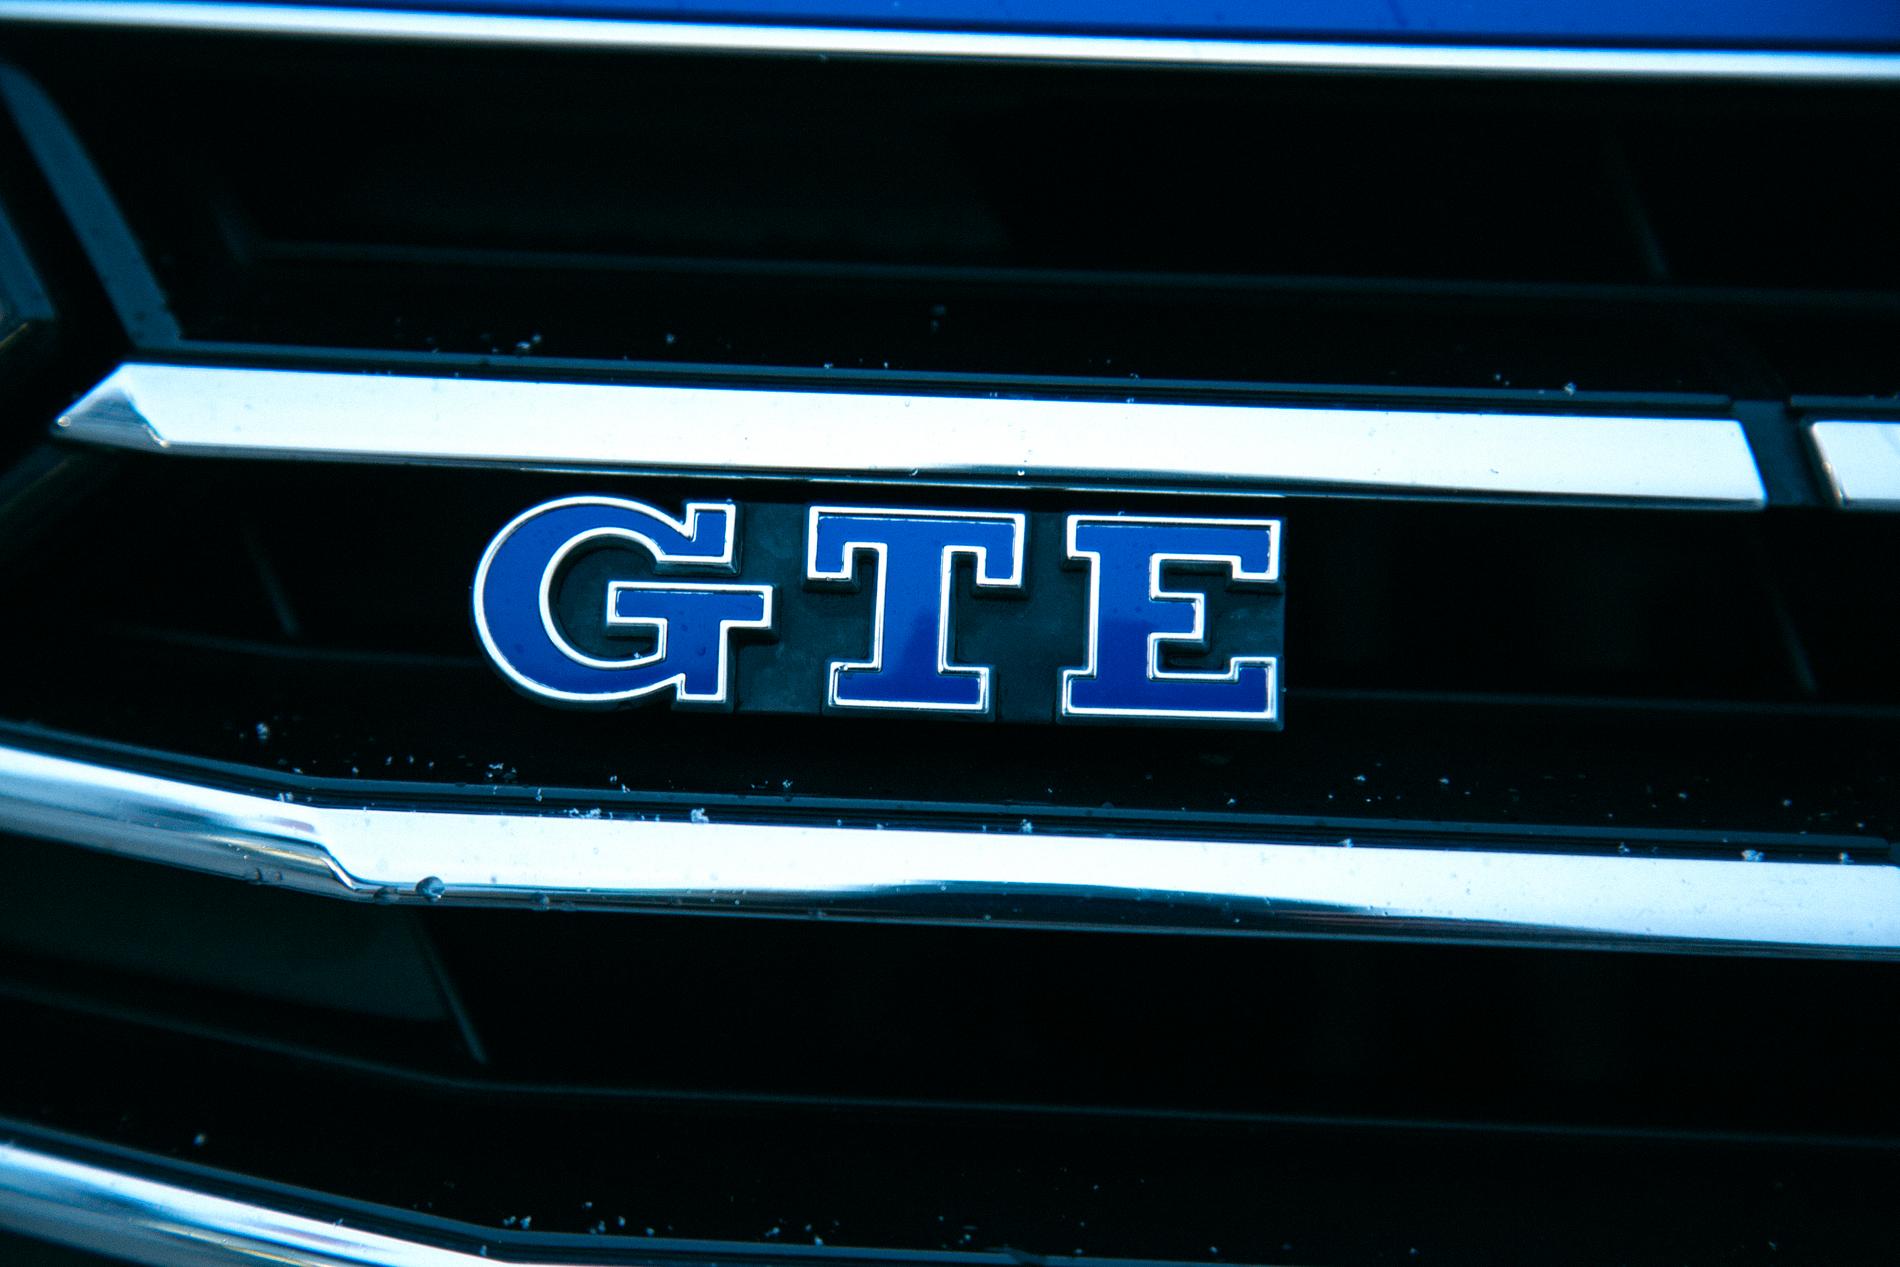 Av de bilar vi kunde mäta tappar Passat GTE mest i räckvidd vid minusgrader, men kommer ändå längst på ren eldrift.